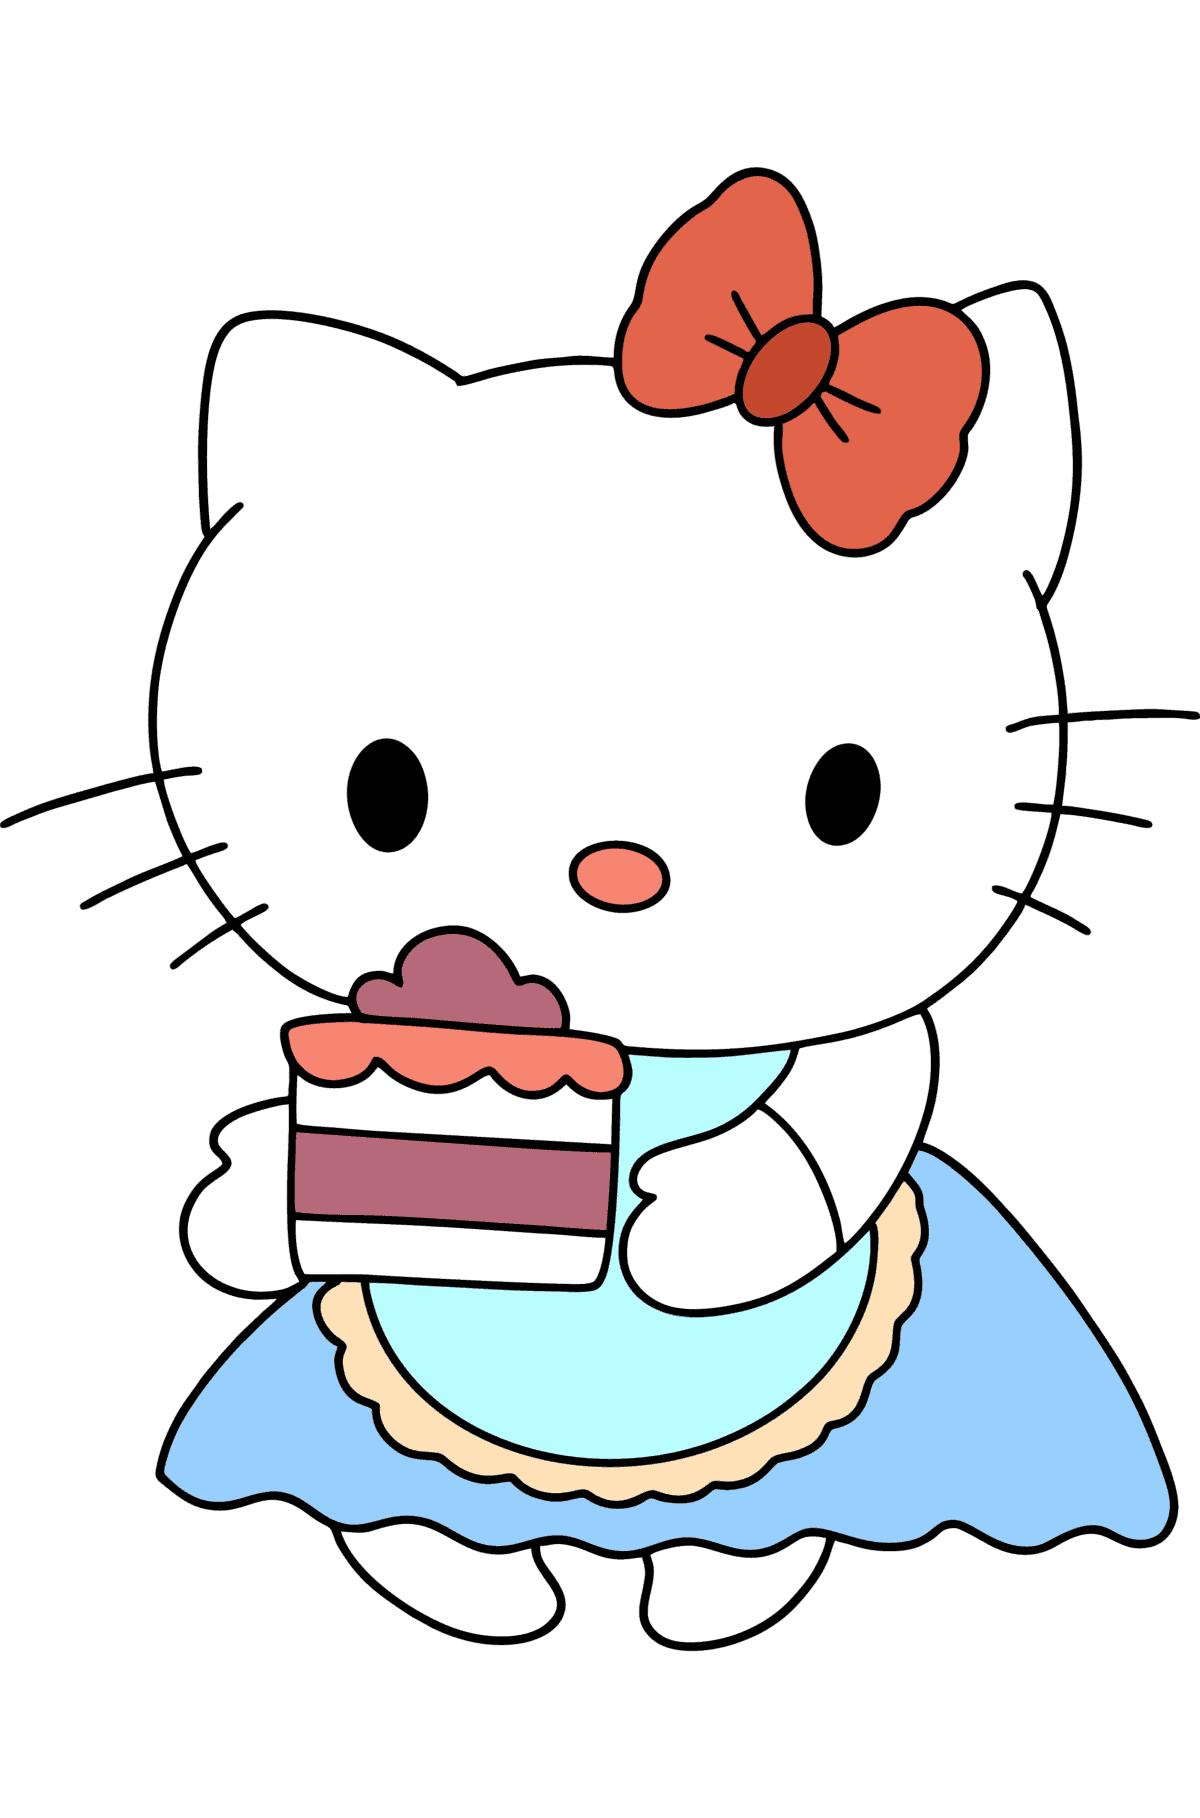 Boyama sayfası Hello Kitty ve pasta - Boyamalar çocuklar için